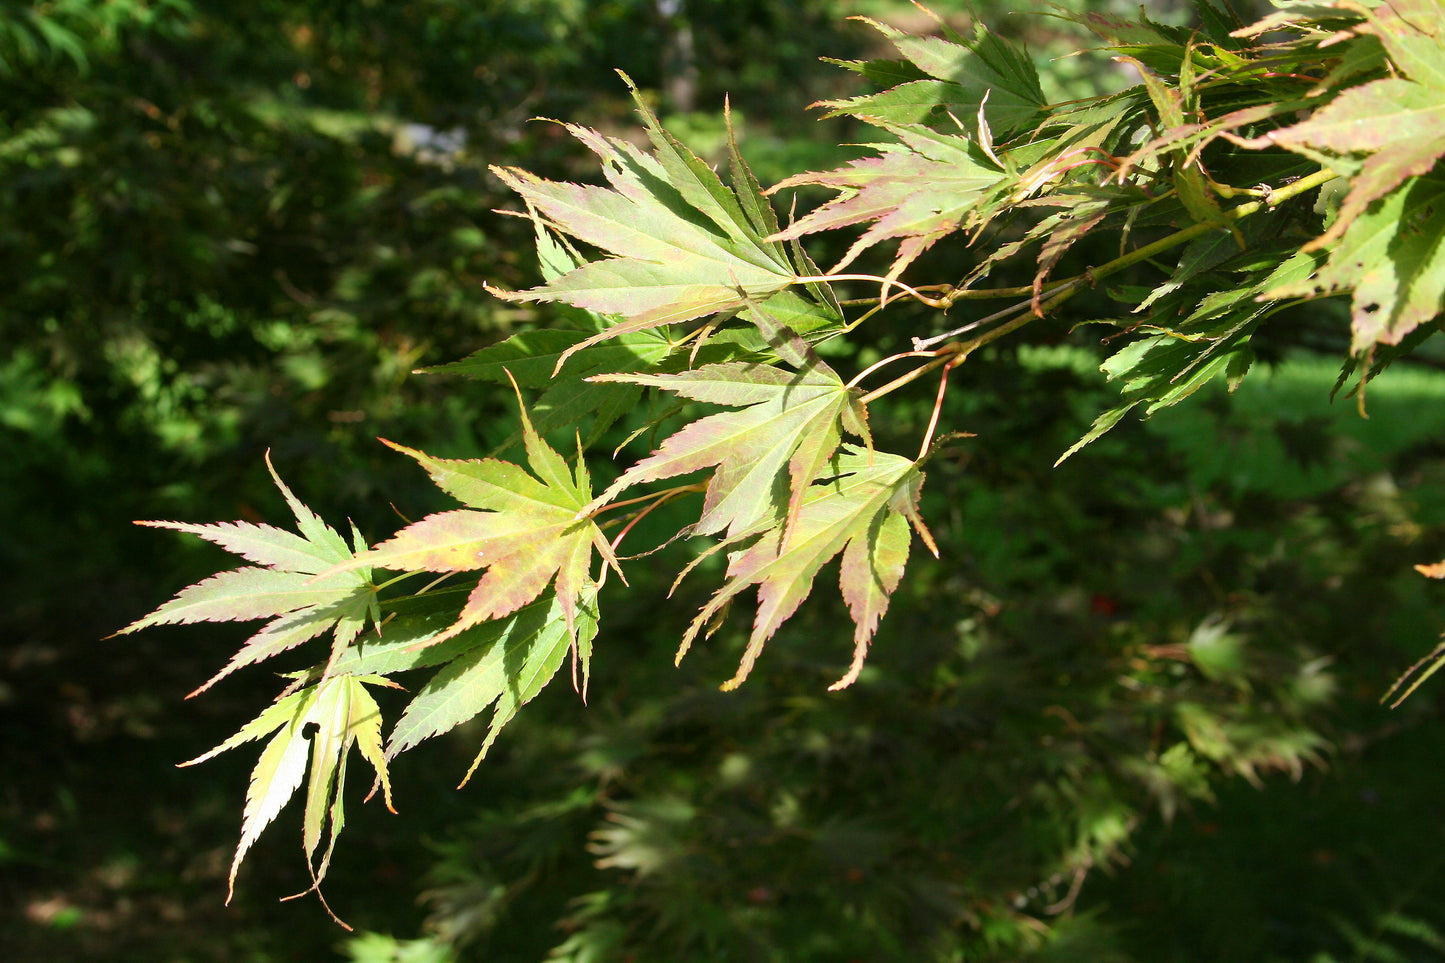 Kinran Japanese Maple (Acer palmatum ssp. amoenum 'Kinran' dry seed)